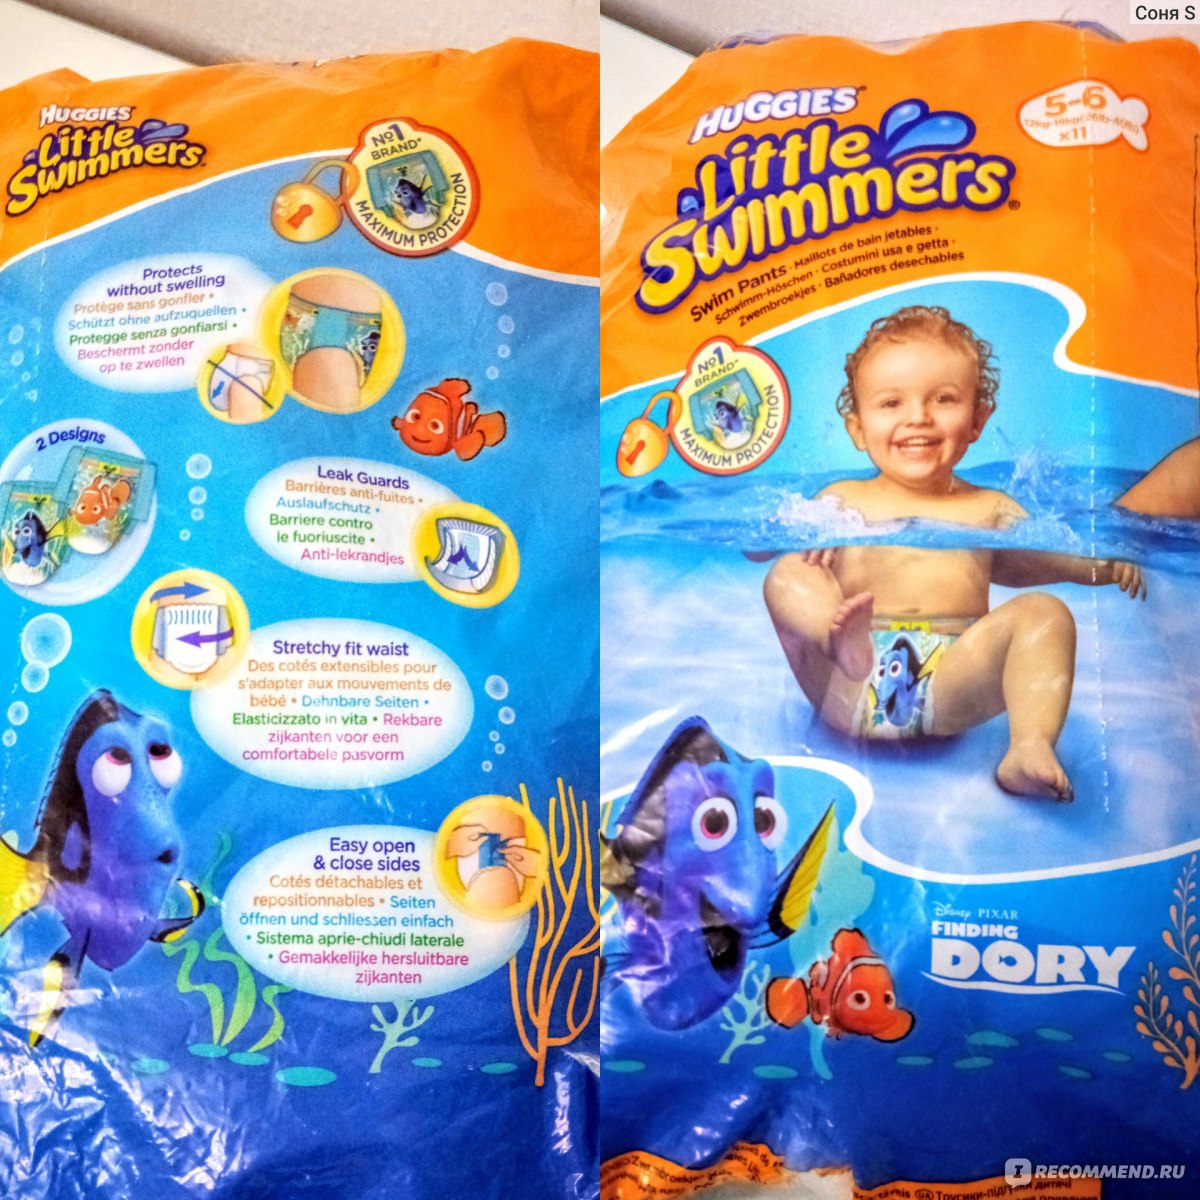 Подгузники-трусики Huggies Little Swimmers для плавания - «Нам оченьпонравились эти трусы! А нужны ли малышу вообще подгузы для купания? 😄»